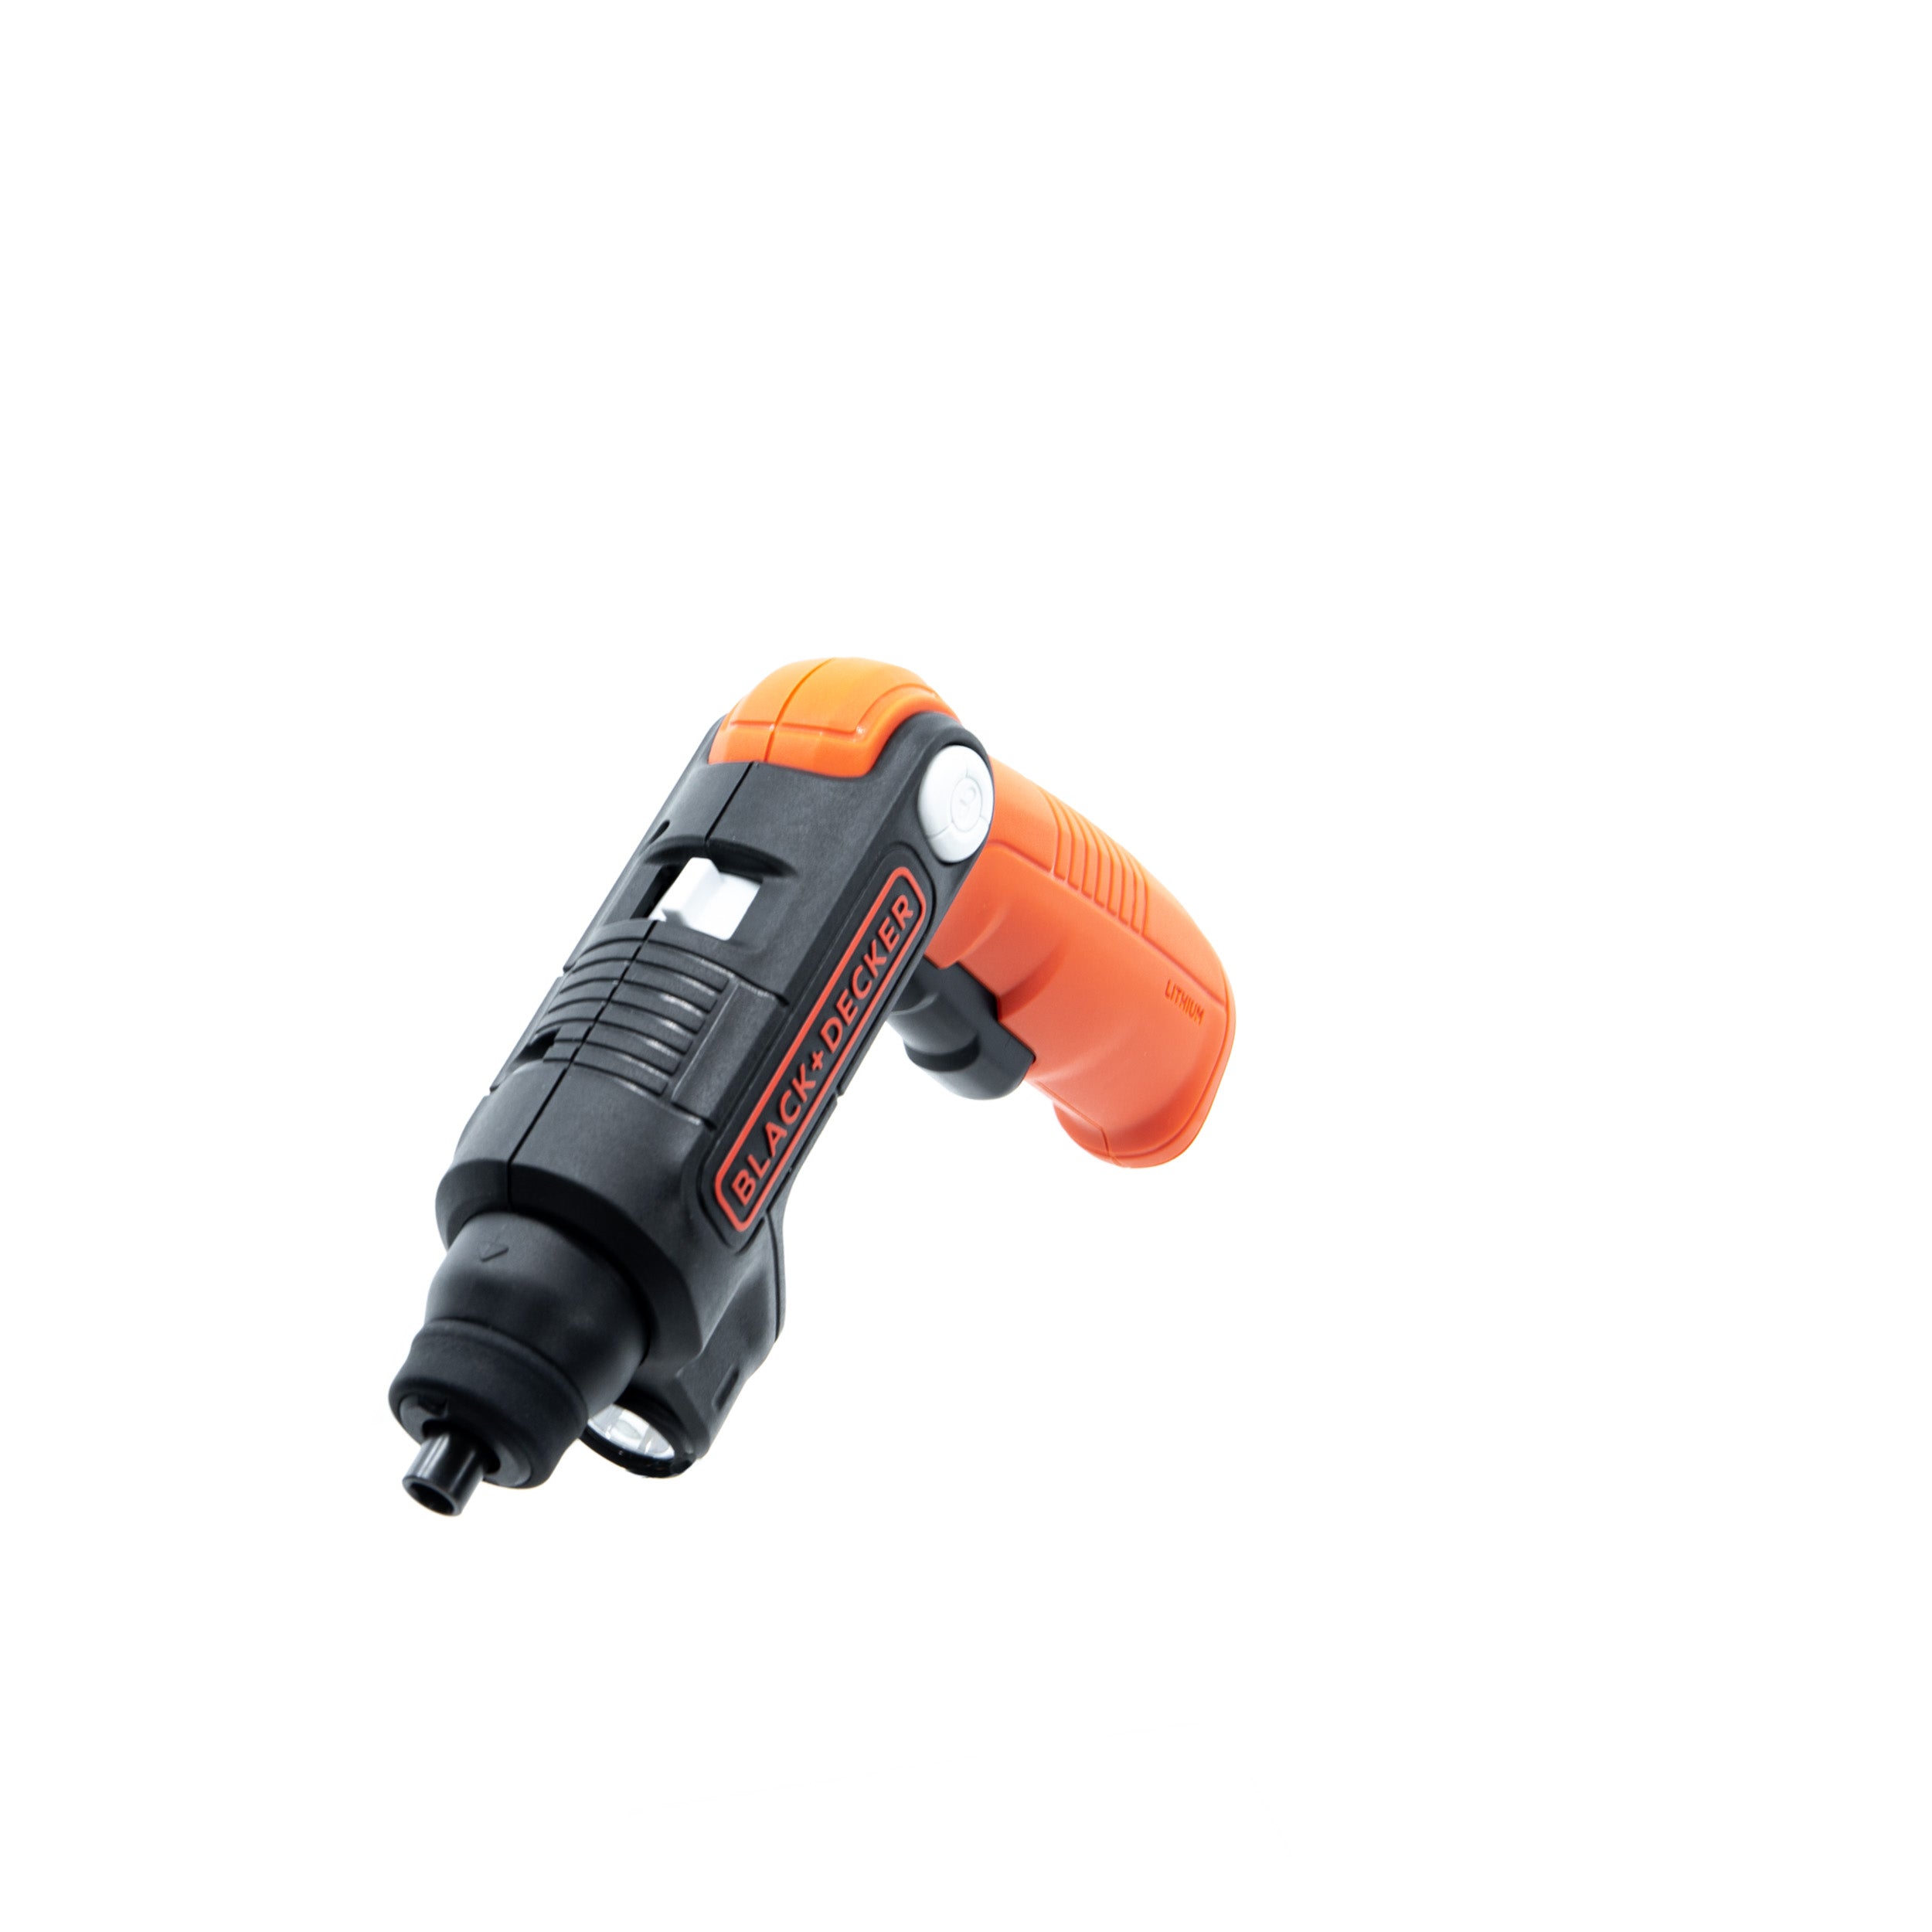 Cordless electric screwdriver - BDCSFL20C - Black & Decker - right